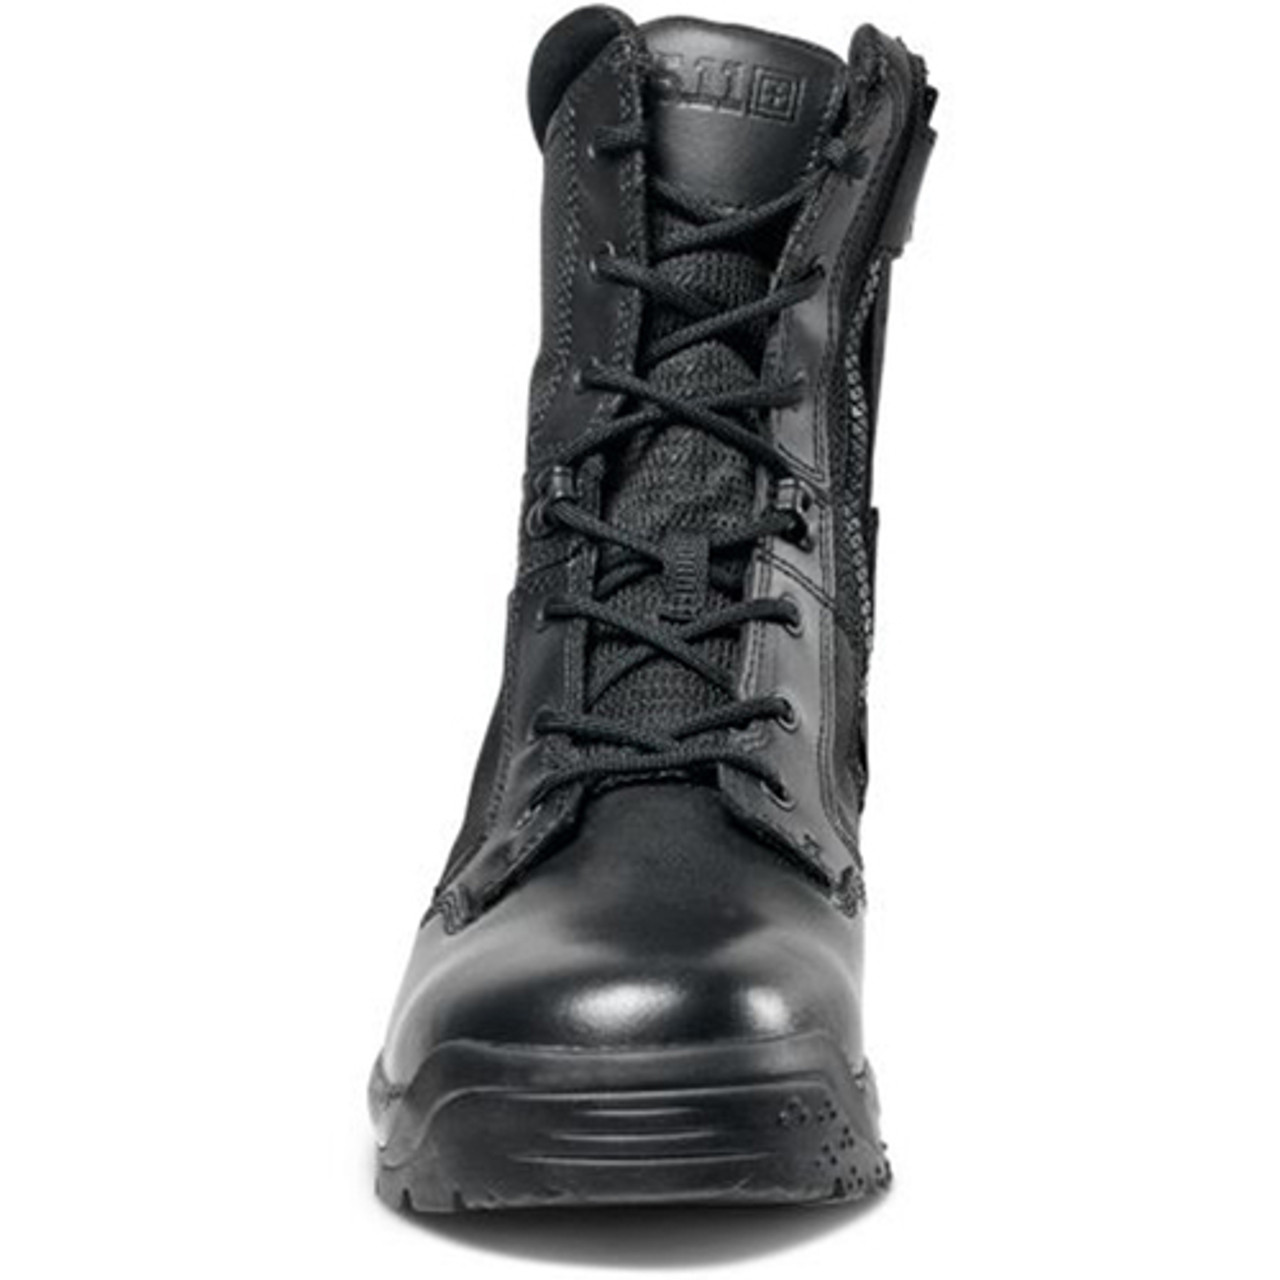 511 slip on boots